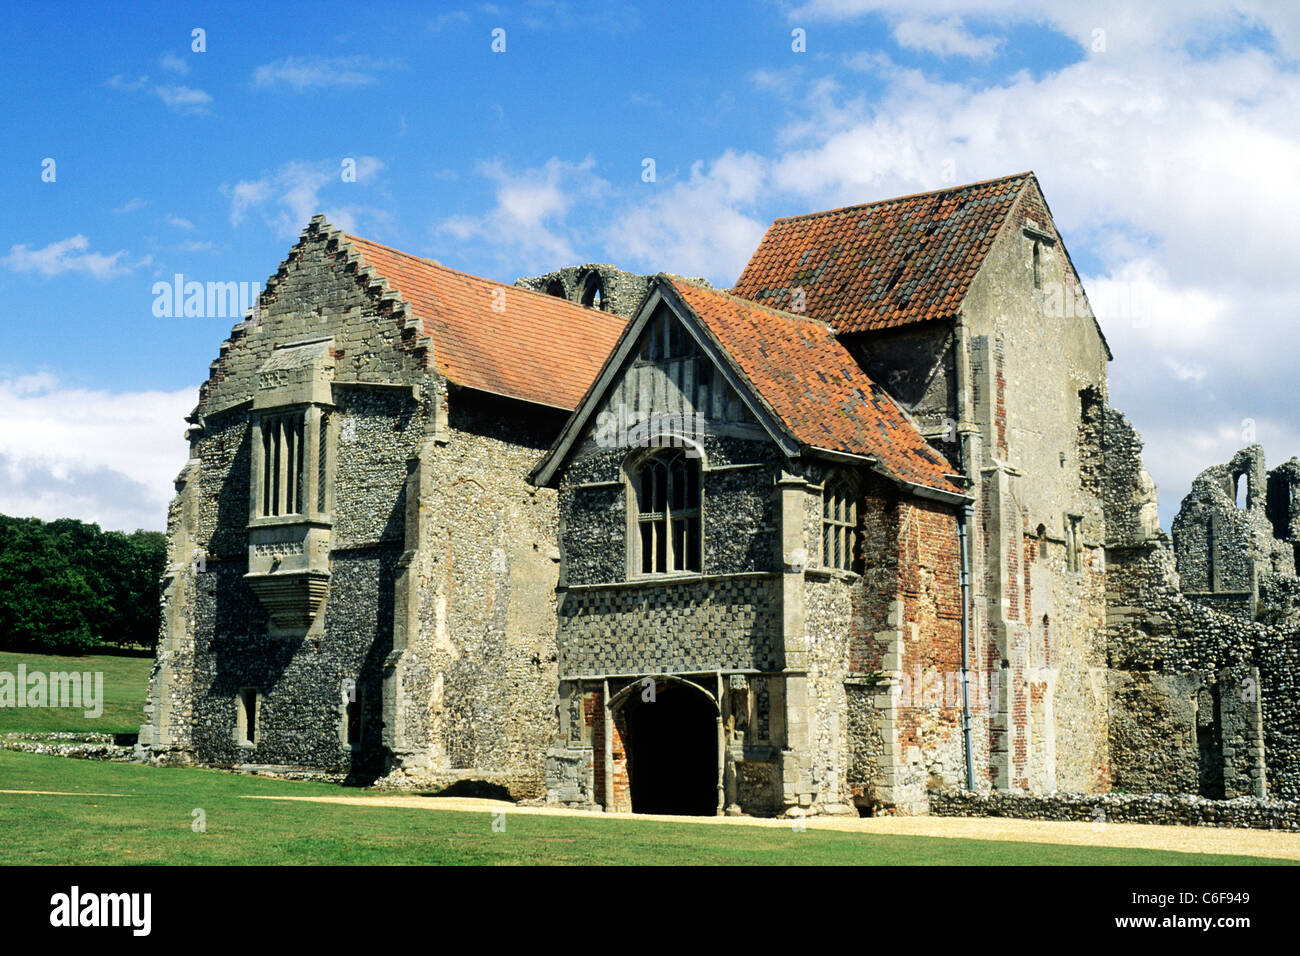 Castle Acre Prieuré, Norfolk. Les prieurs Logement English abbaye médiévale abbayes prieurés bulding monastique monastère bâtiments Banque D'Images